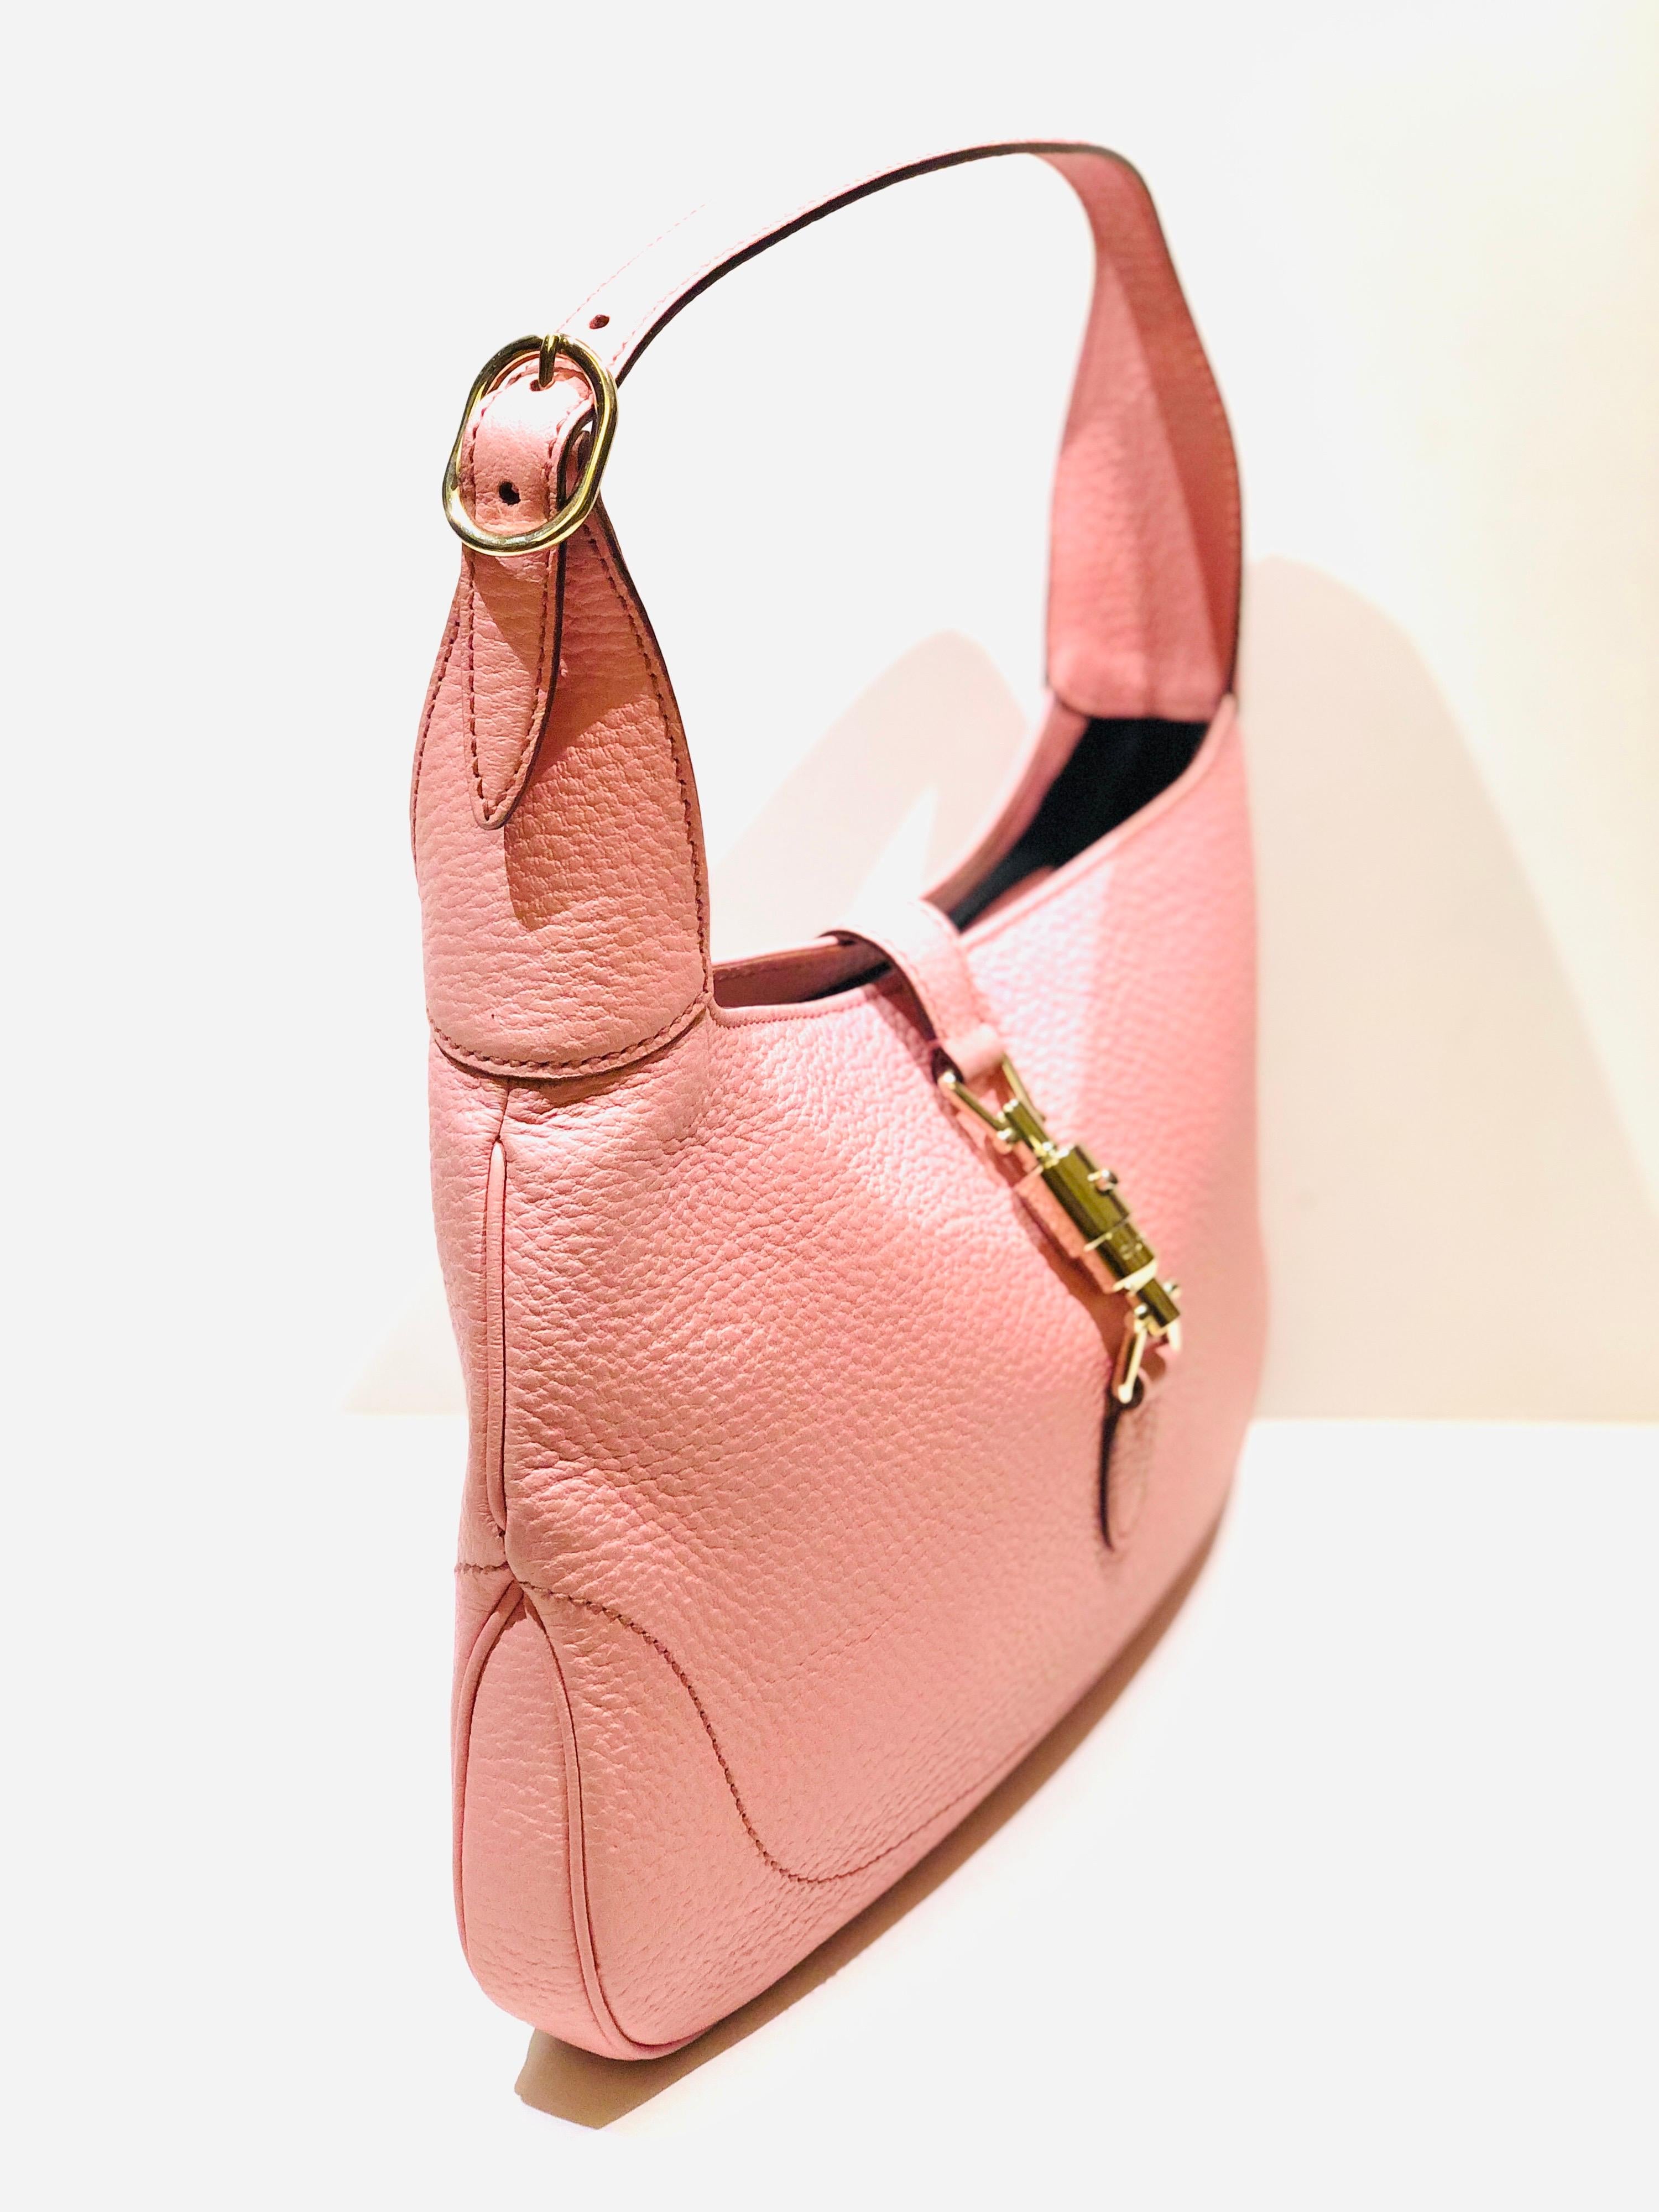 - Gucci 30cm pink leather jackie 1961 hobo shoulder bag. 

- Silver-toned hardware. 

- Interior: 1 open pocket and 1 zipper pocket

- Size: Length: 30cm I Height: 20cm I Width: 3cm. Handle Drop: 18cm to 22cm. (adjustable strap) 
